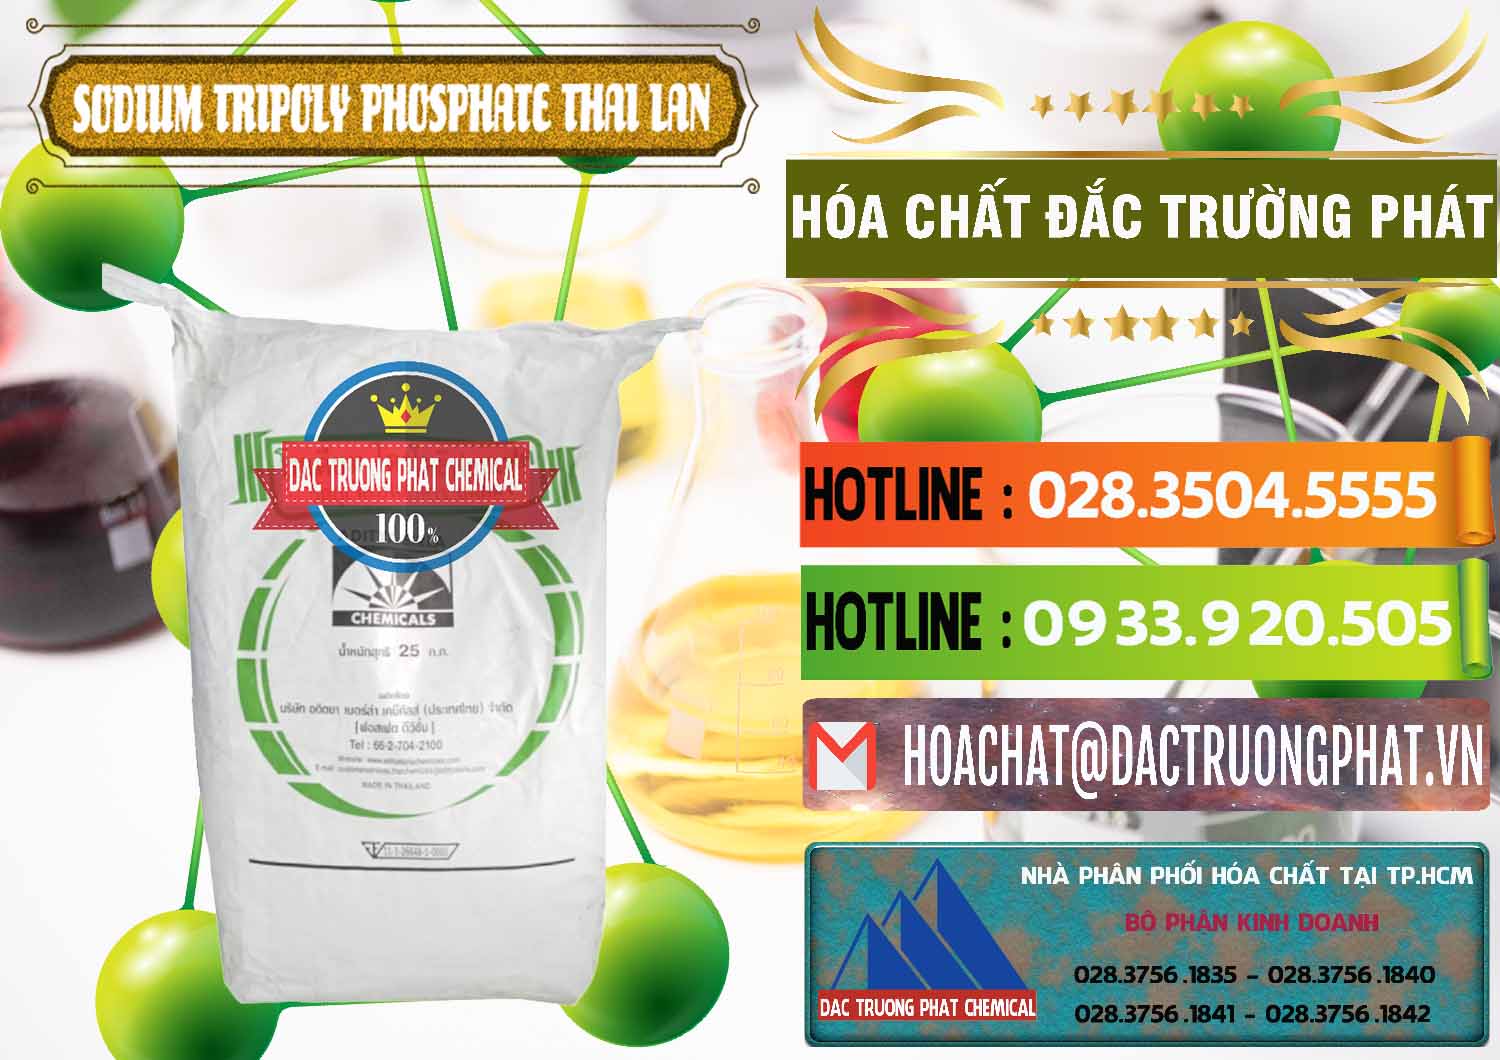 Đơn vị chuyên bán và cung ứng Sodium Tripoly Phosphate - STPP Aditya Birla Grasim Thái Lan Thailand - 0421 - Cty cung cấp & nhập khẩu hóa chất tại TP.HCM - cungcaphoachat.com.vn